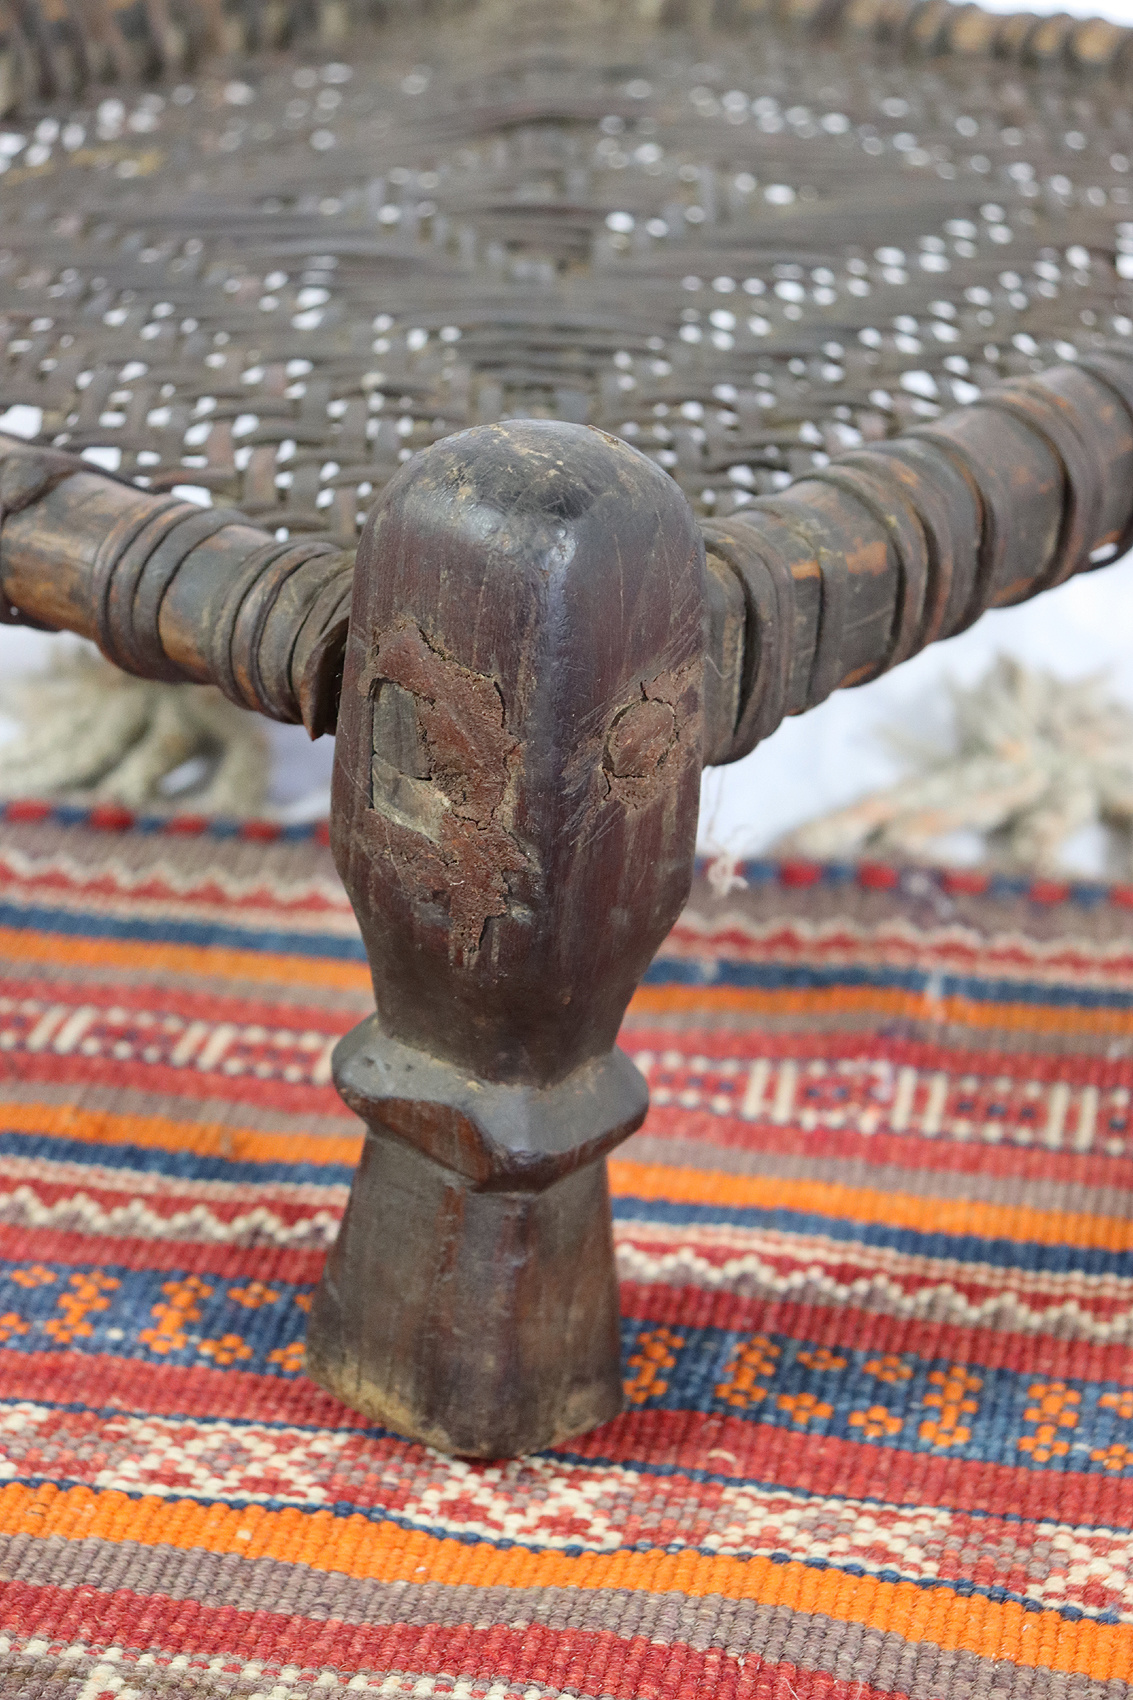 42x42 cm Antique Nuristan Chair  low stool No:NUR21- K